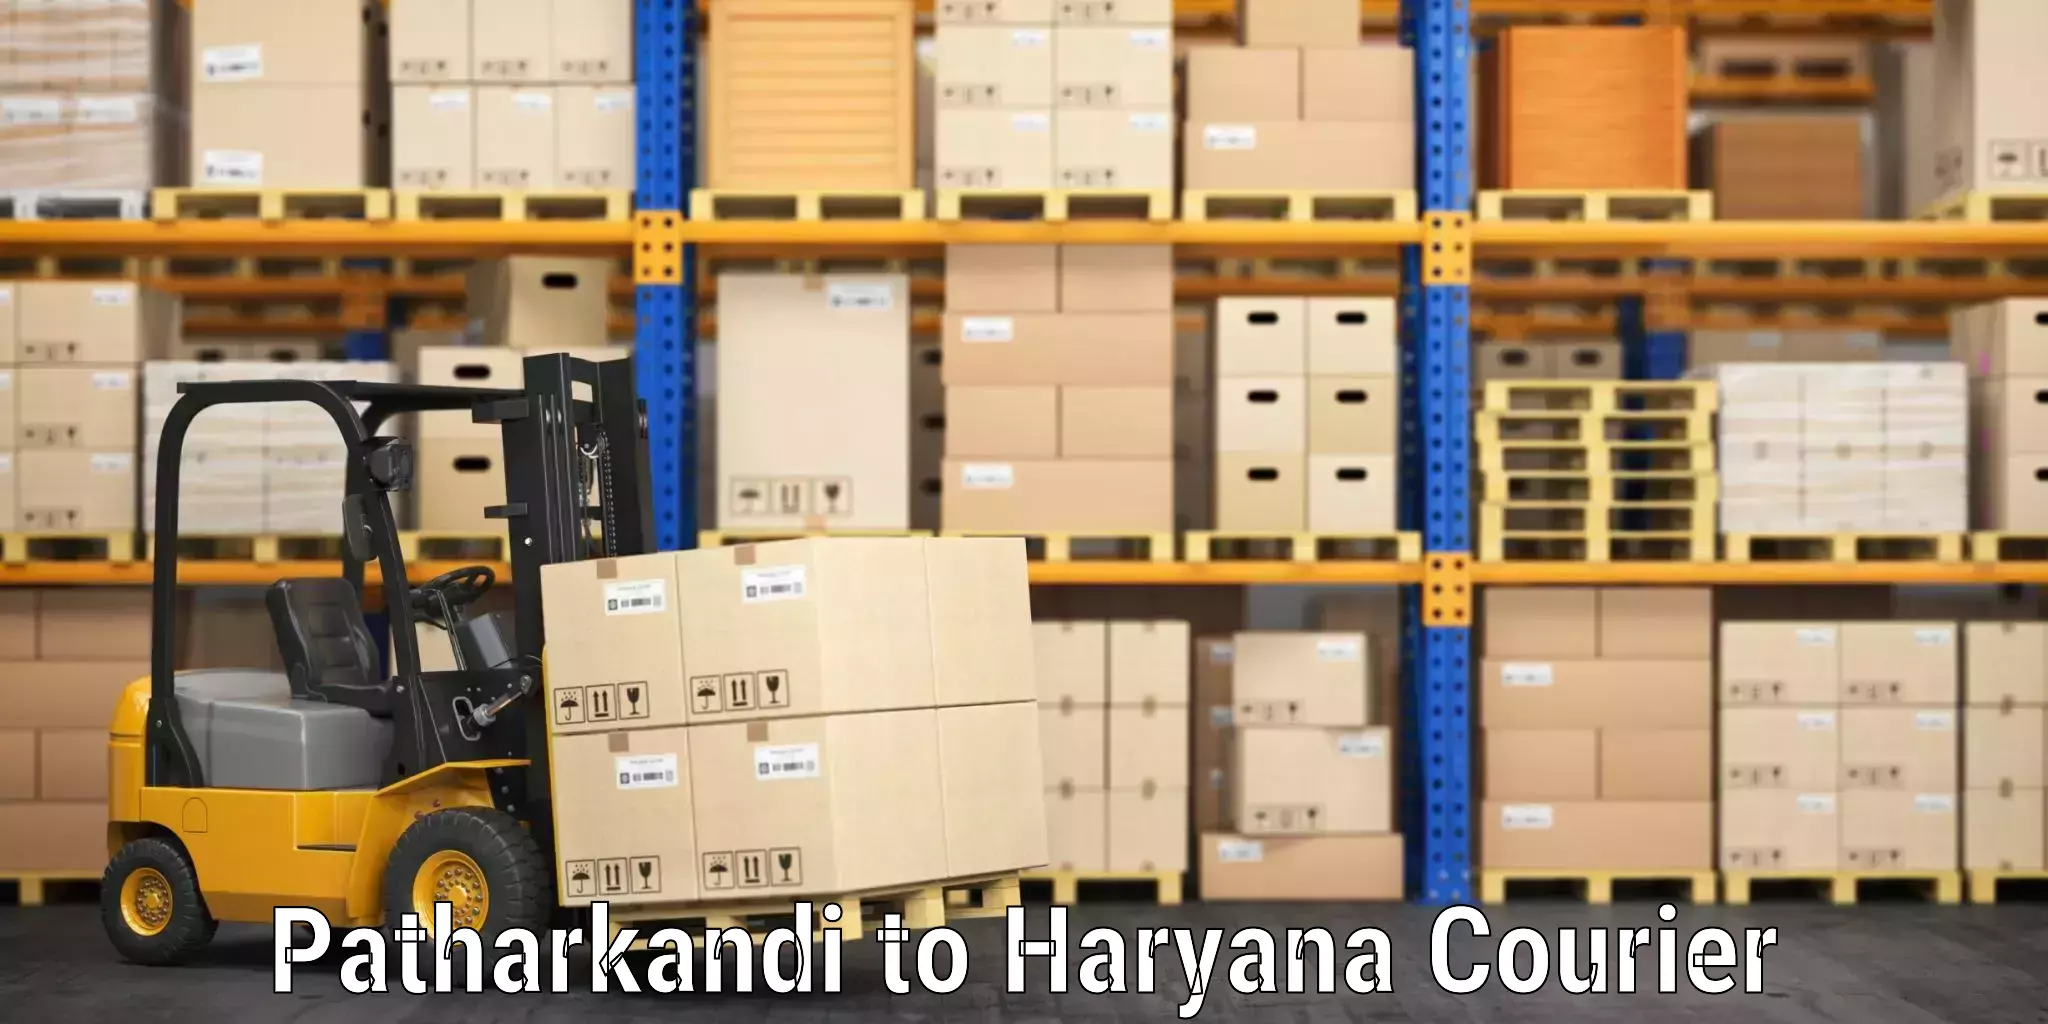 Baggage shipping experience Patharkandi to Haryana